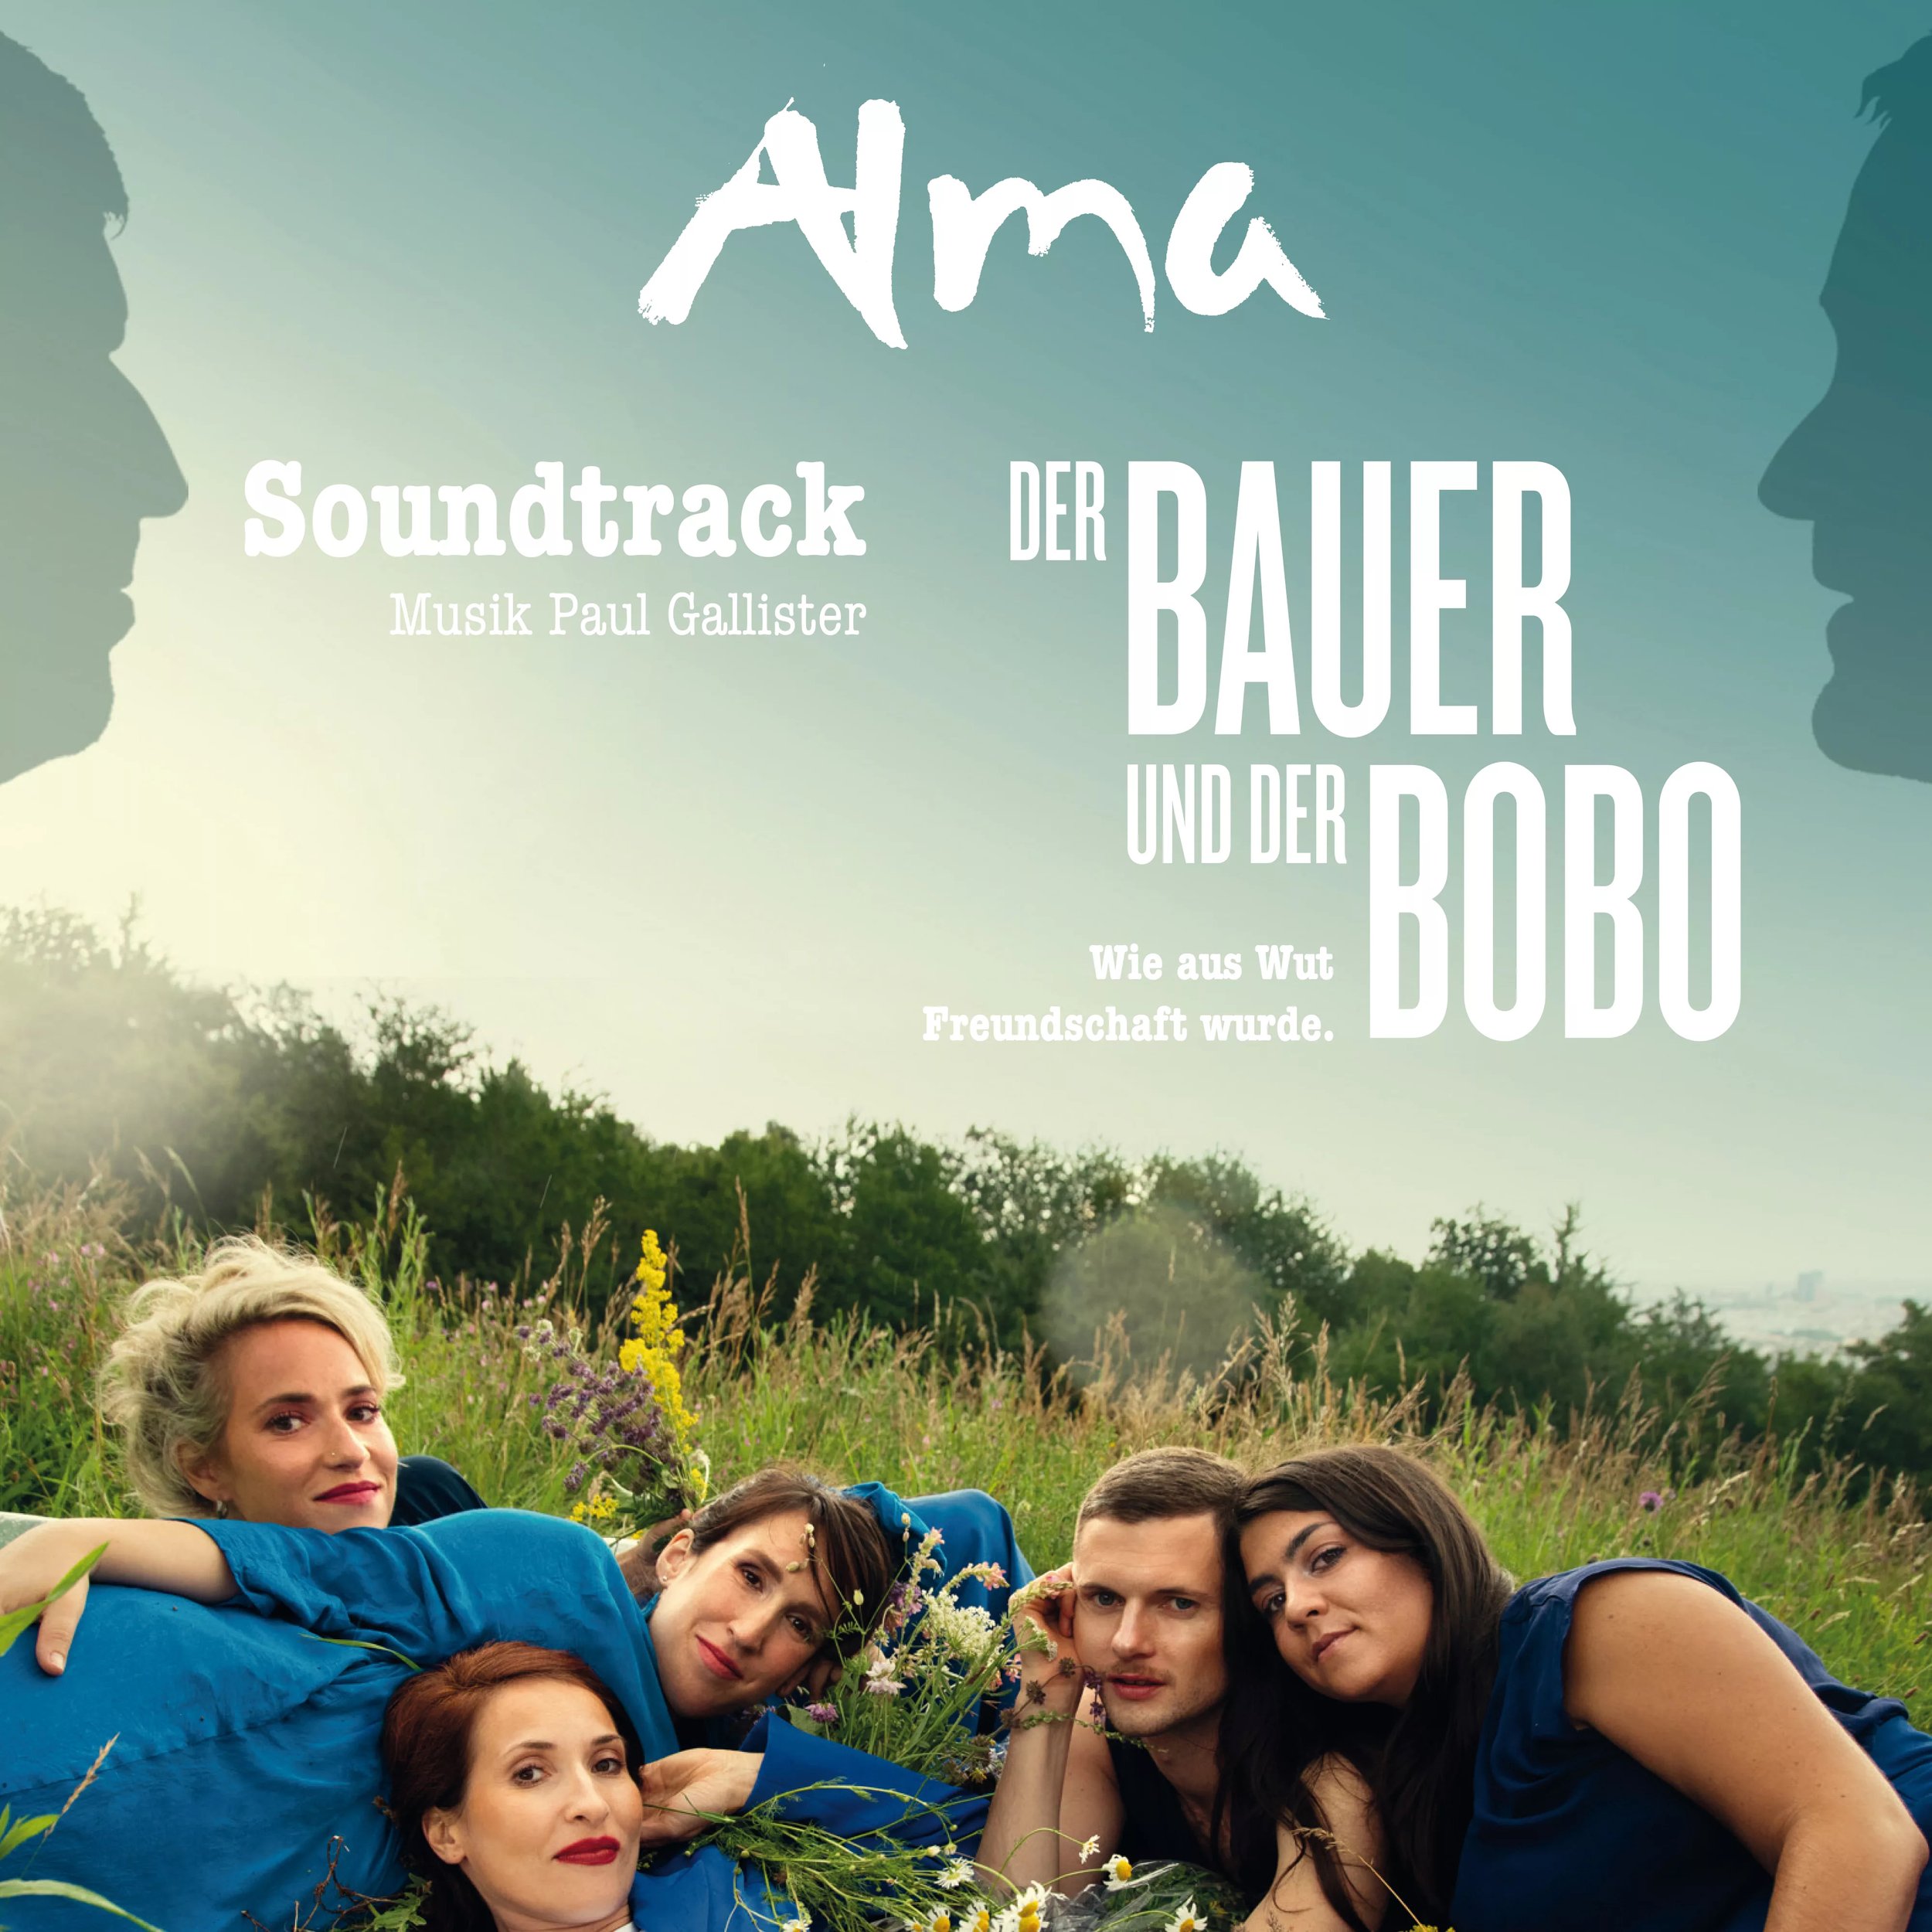 Der Bauer und der Bobo - Soundtrack